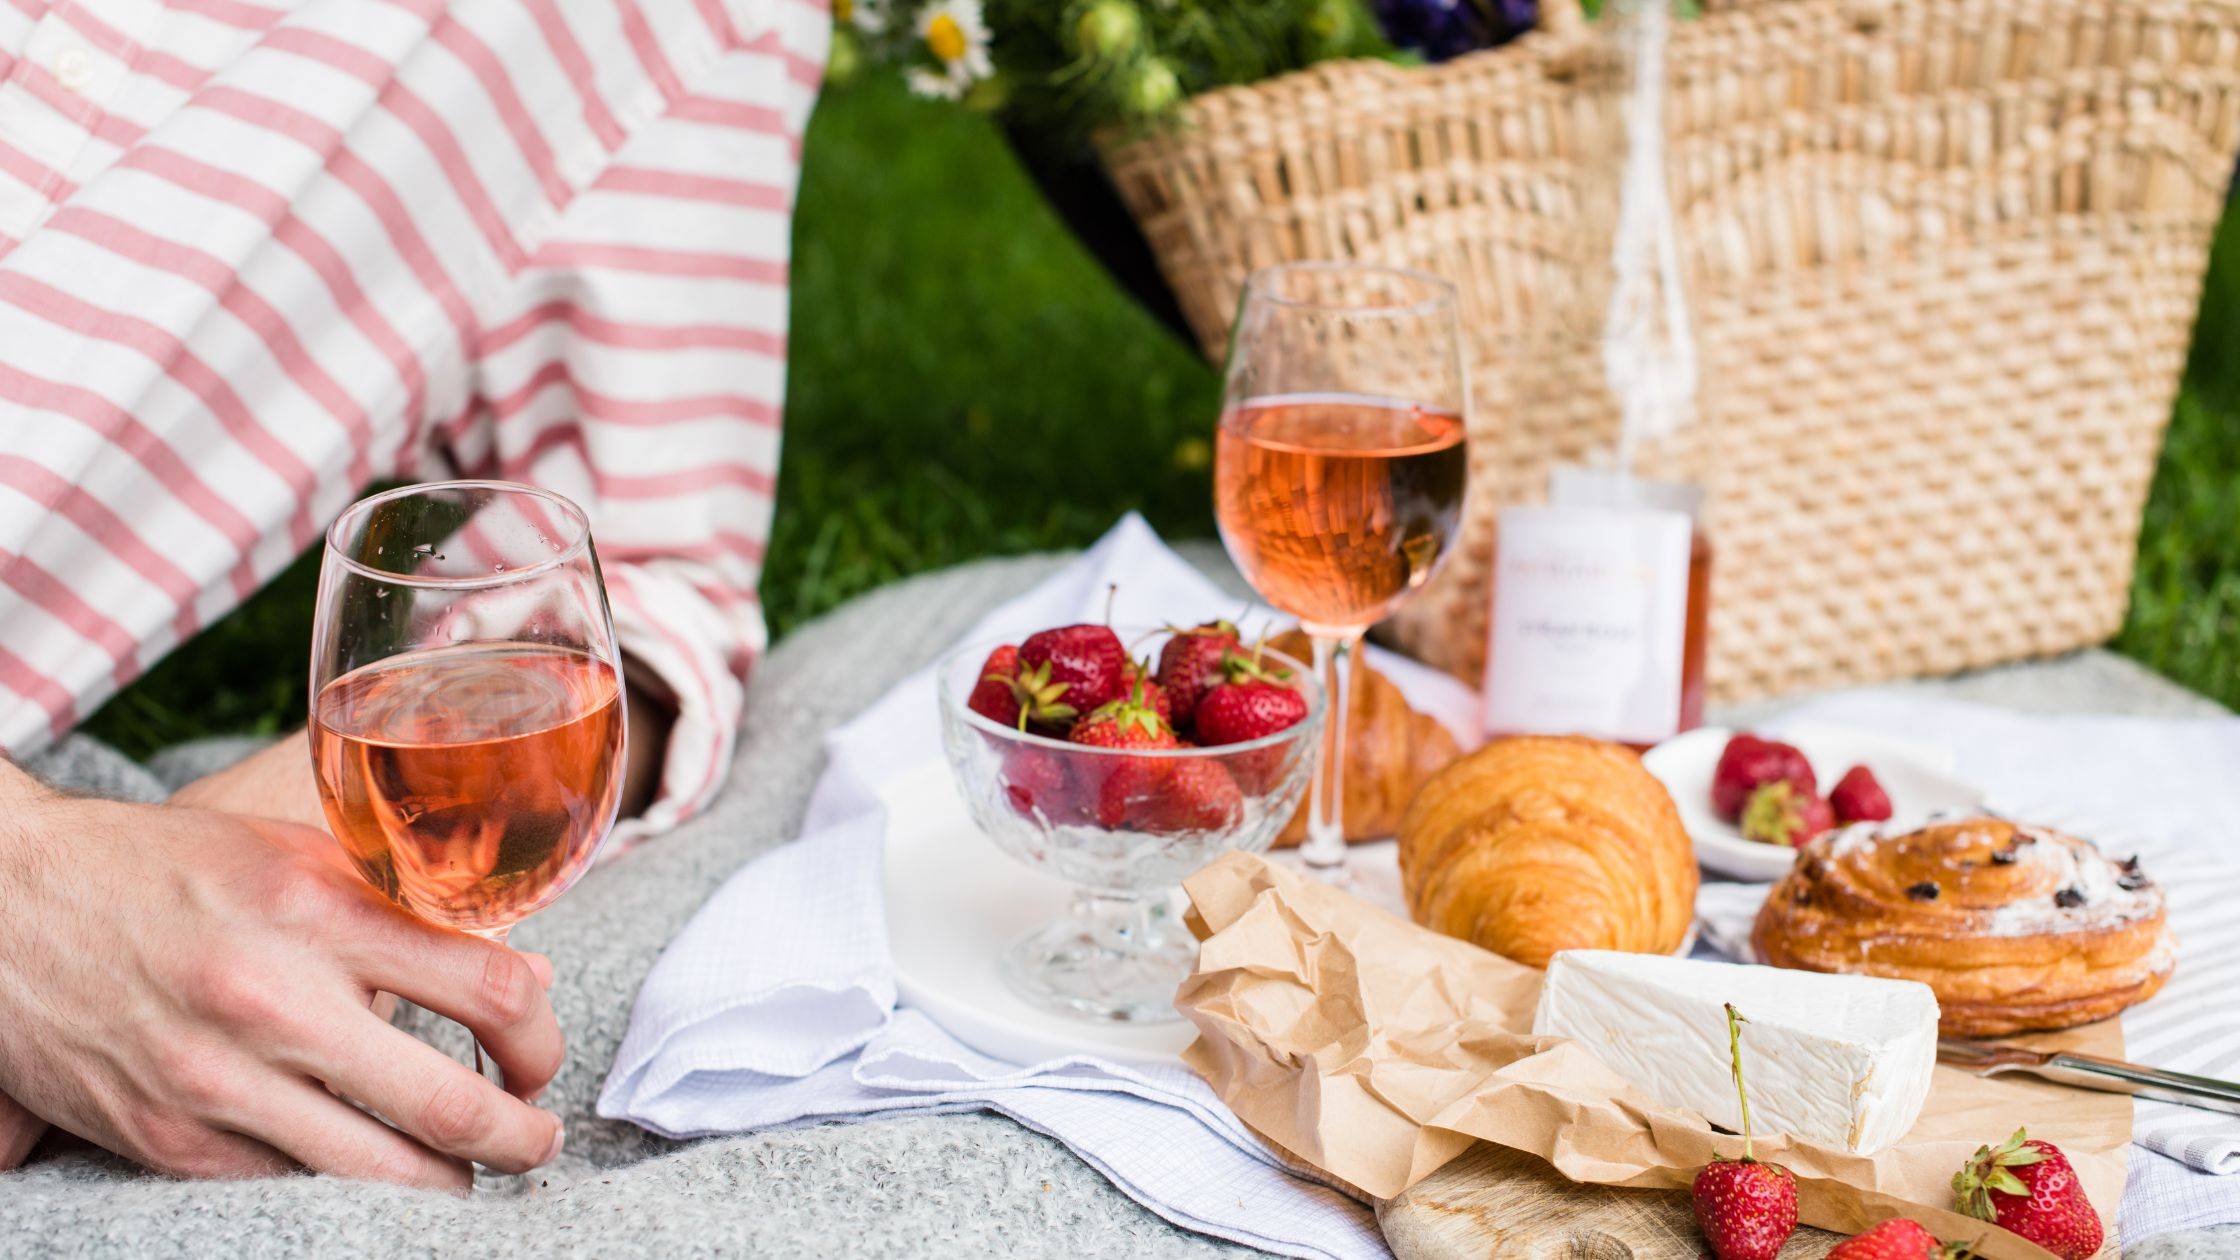 Pic nic vino in primavera - Wine picnic in spring